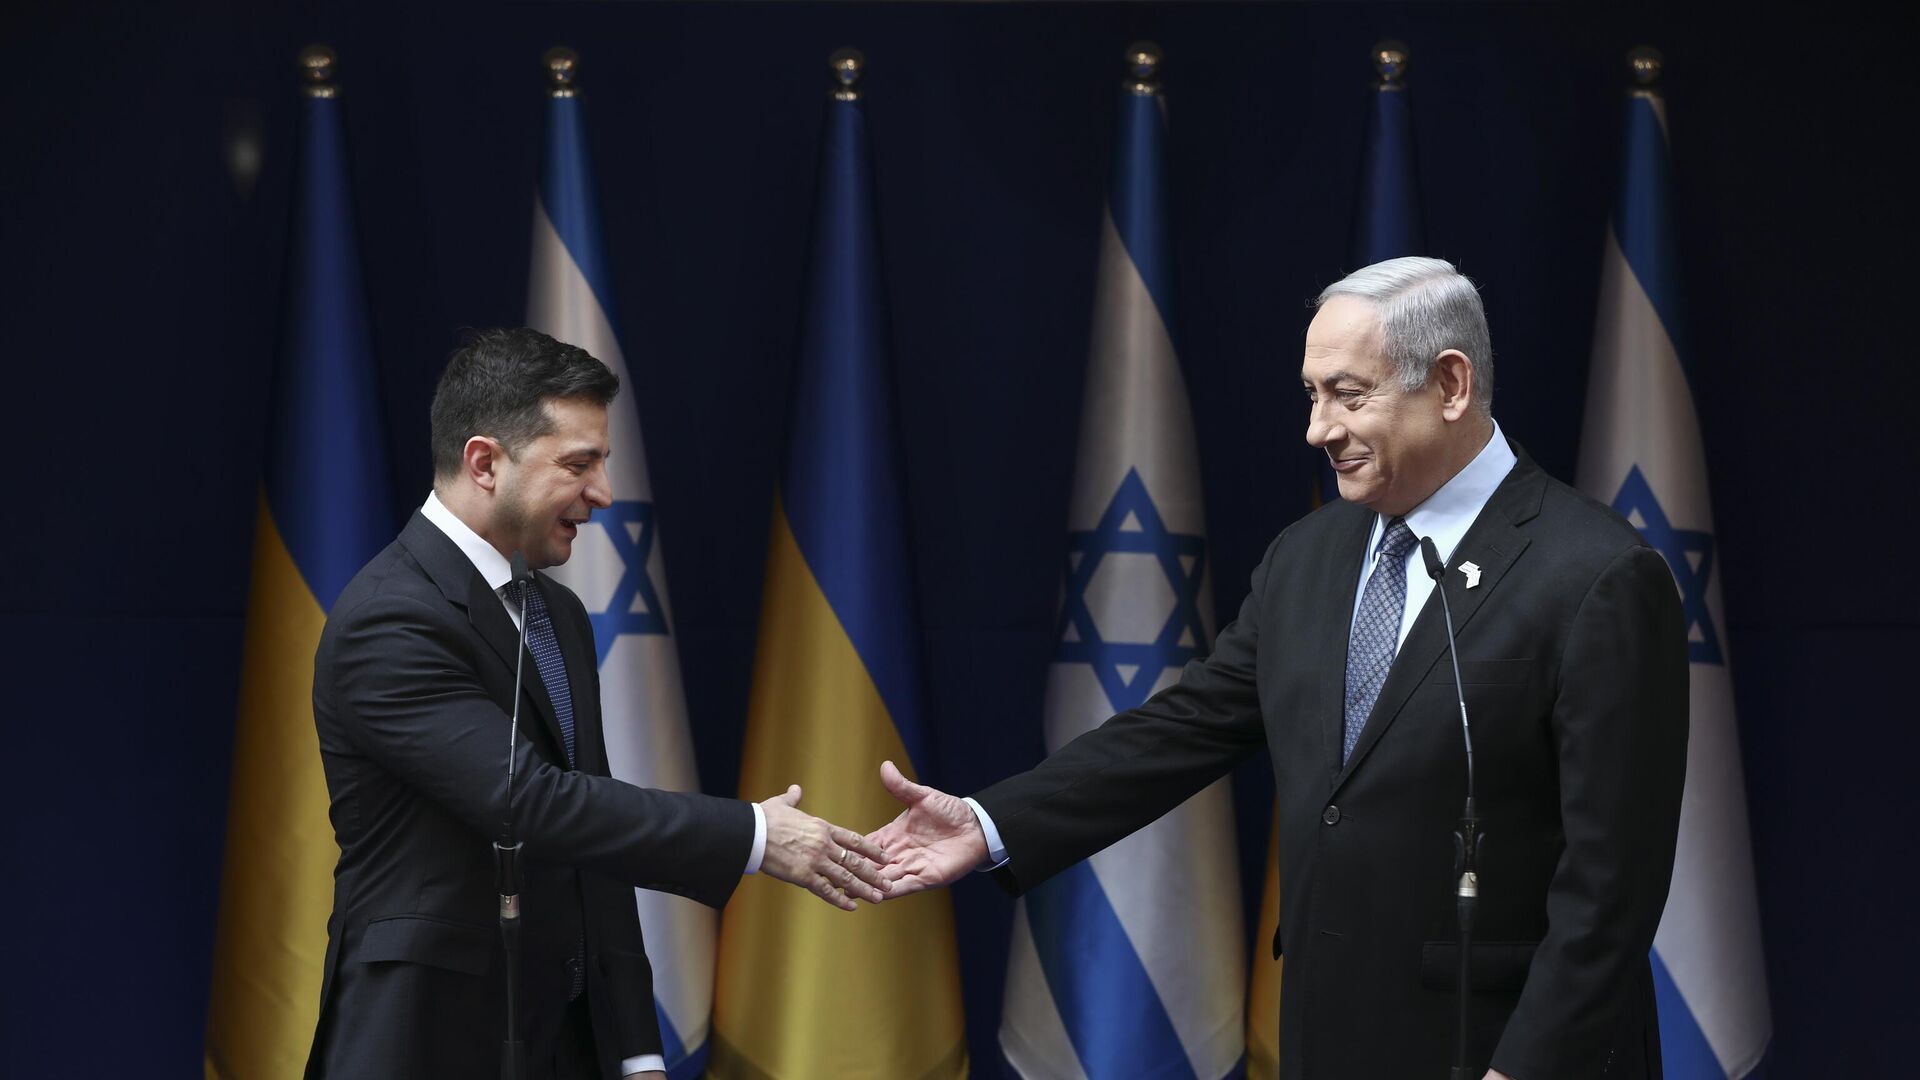 Премьер-министр Израиля Биньямин Нетаньяху (справа) и президент Украины Владимир Зеленский обмениваются рукопожатием во время встречи в Иерусалиме в пятницу, 24 января 2020 г. - ИноСМИ, 1920, 19.11.2023